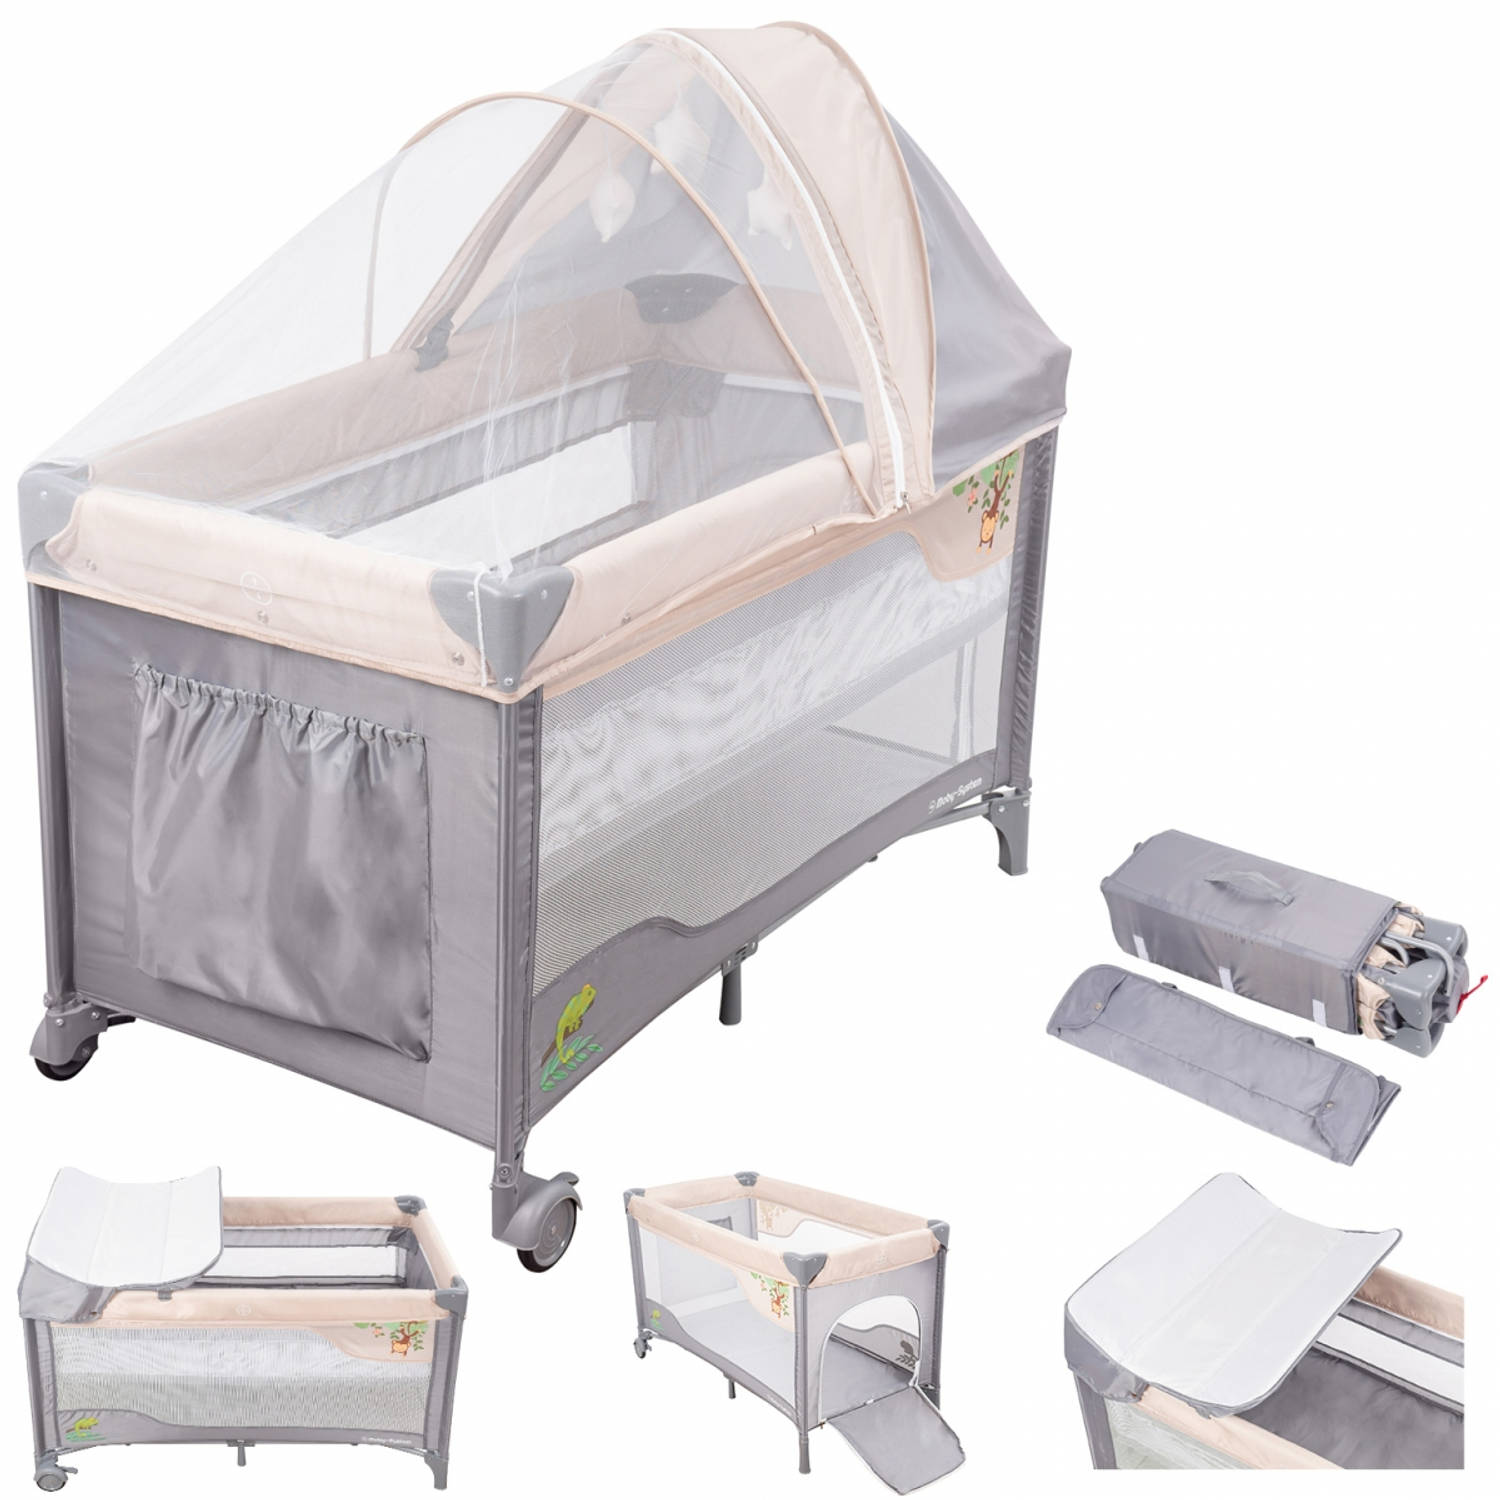 Consumeren lade van Moby System Campingbedje - Reisbedje baby - met matras commode | Blokker